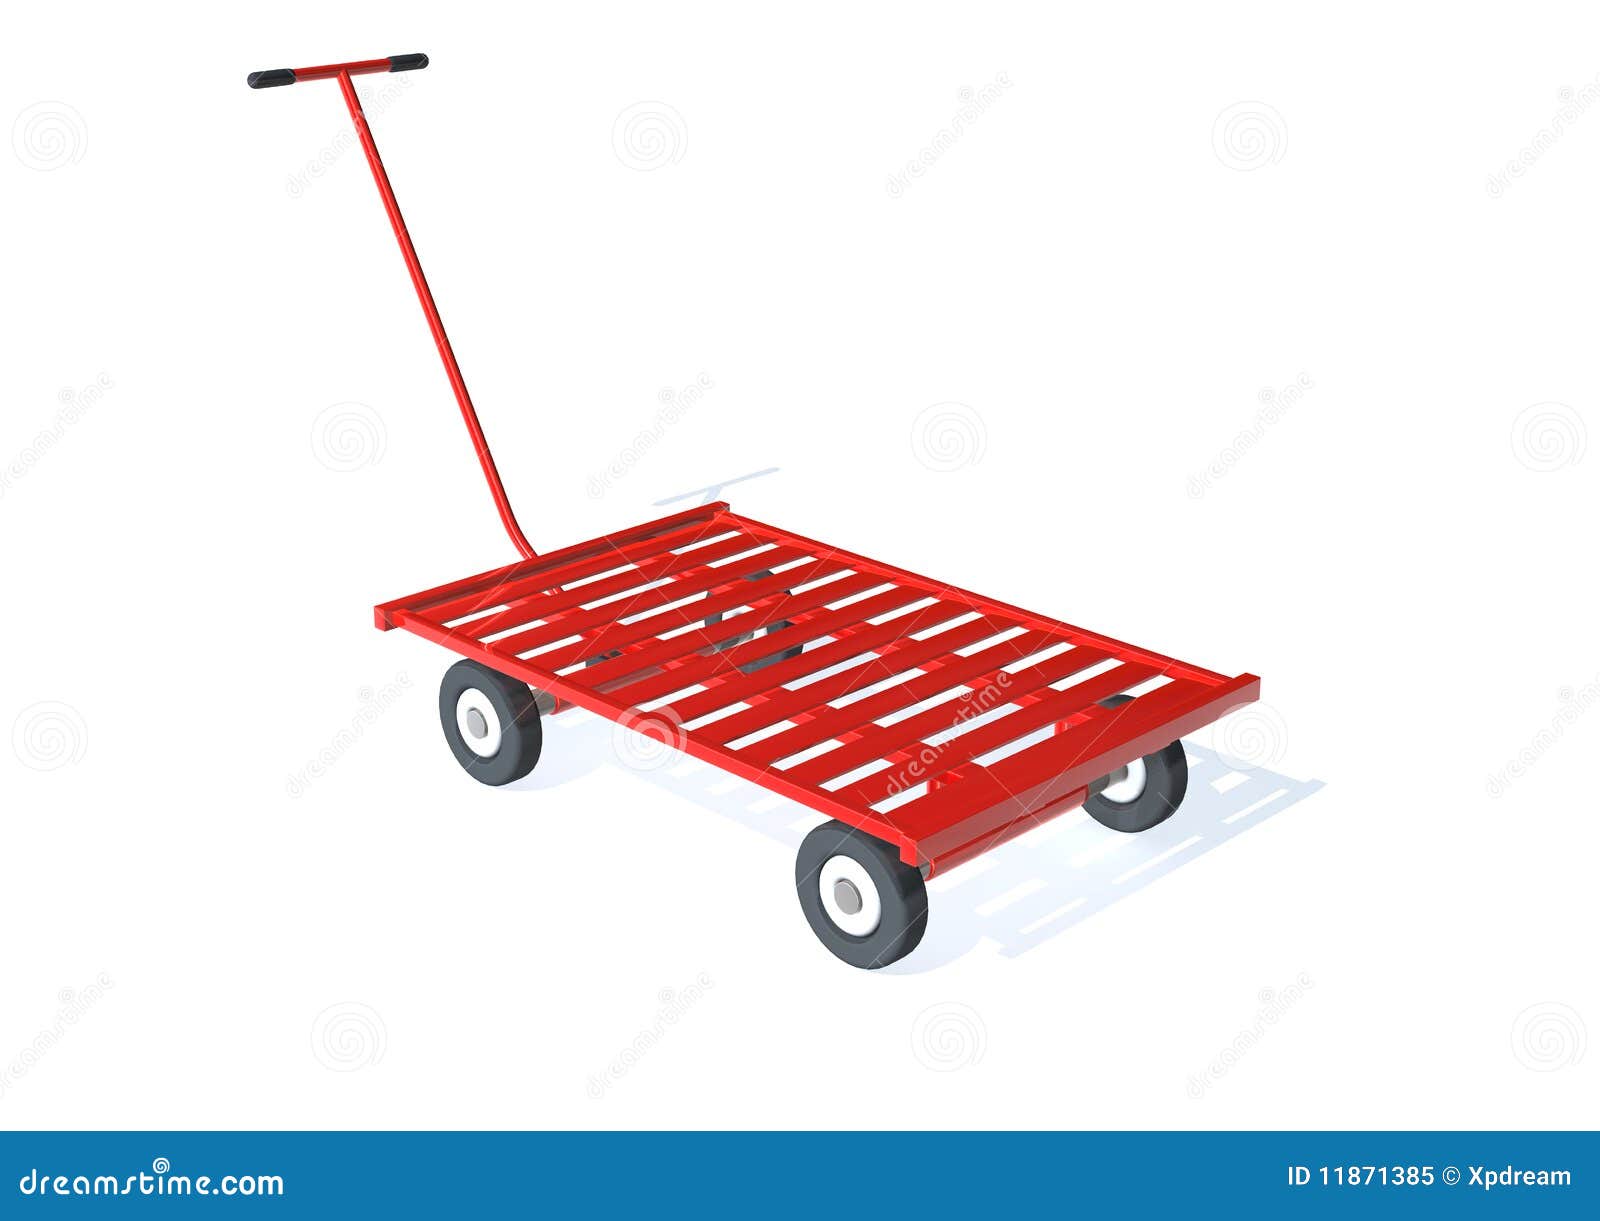 Cart stock illustration. Illustration of packaging, transportation